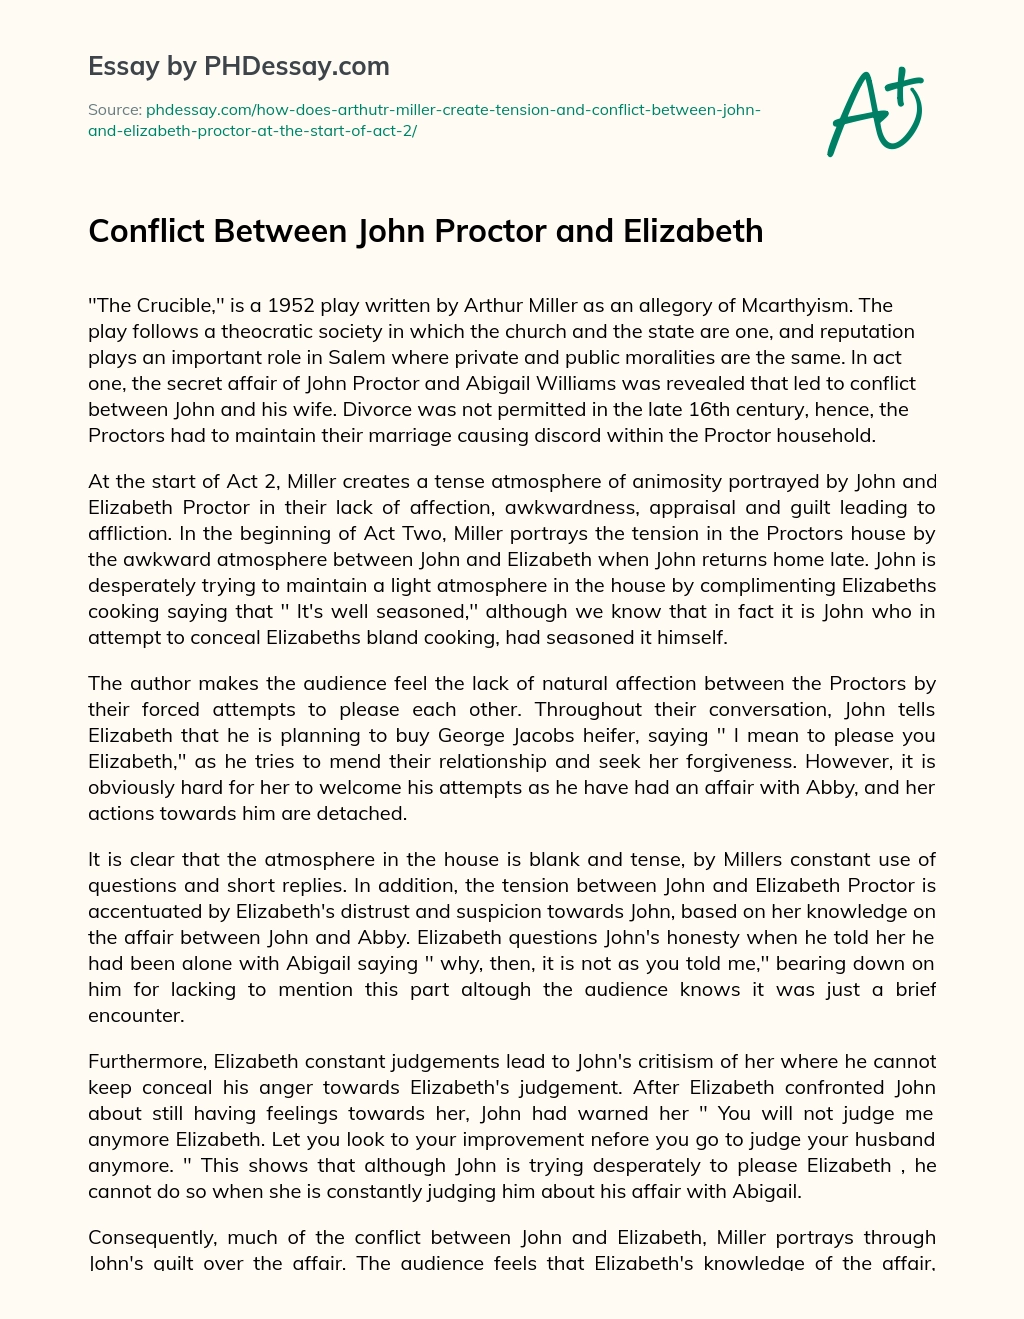 Conflict Between John Proctor and Elizabeth essay